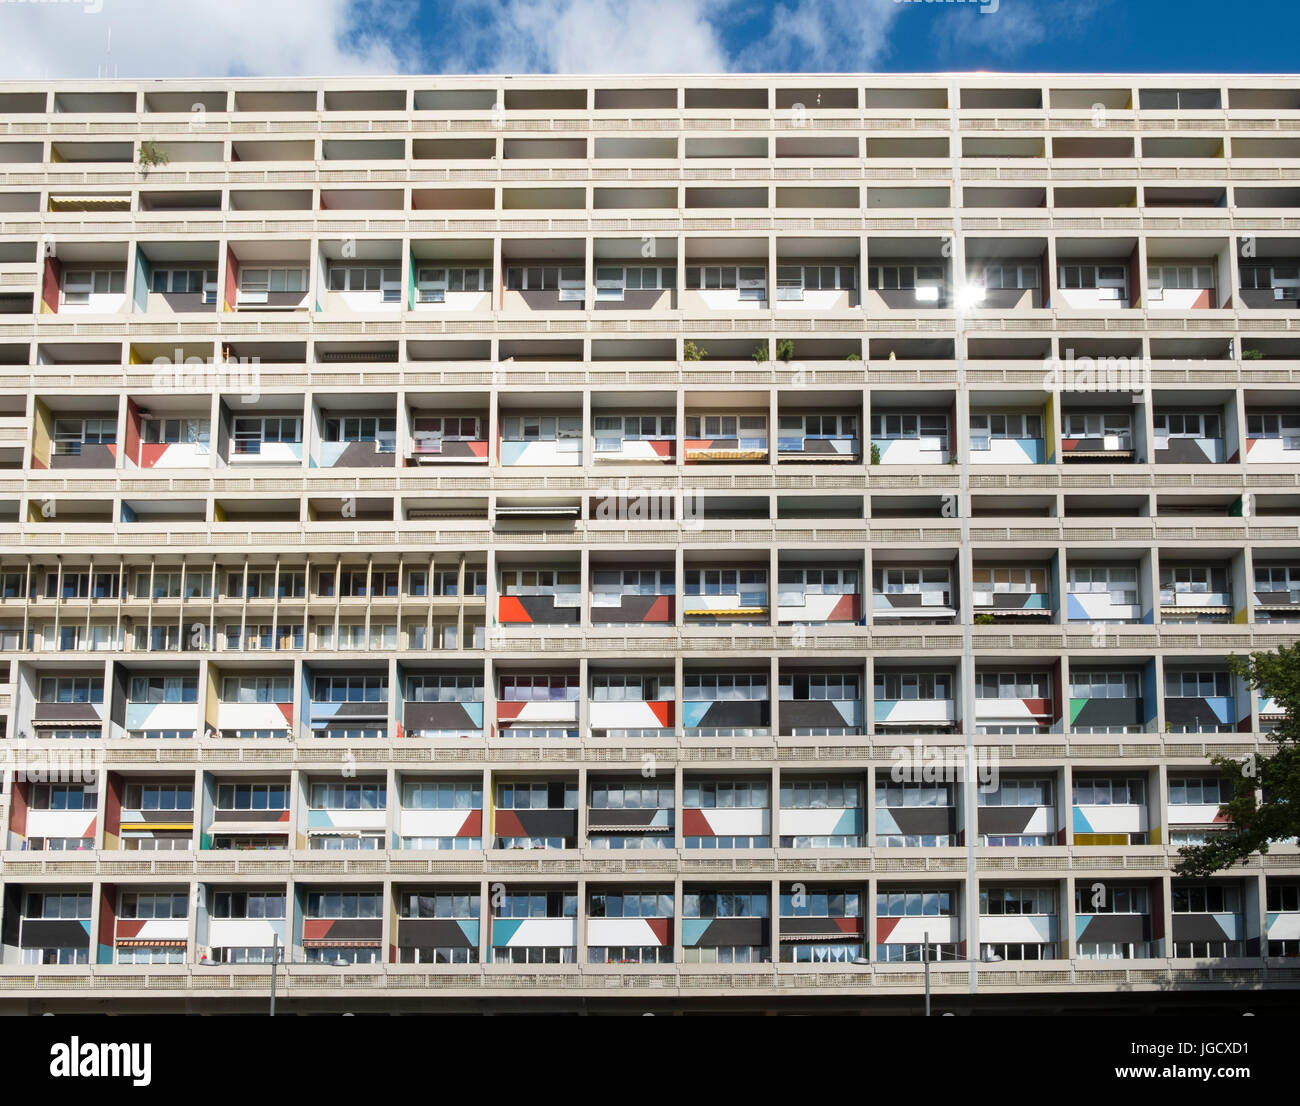 Außenansicht des Corbusierhaus modernistischen Wohnhaus gebaut als Unite d ' habitation in Berlin, Deutschland Stockfoto